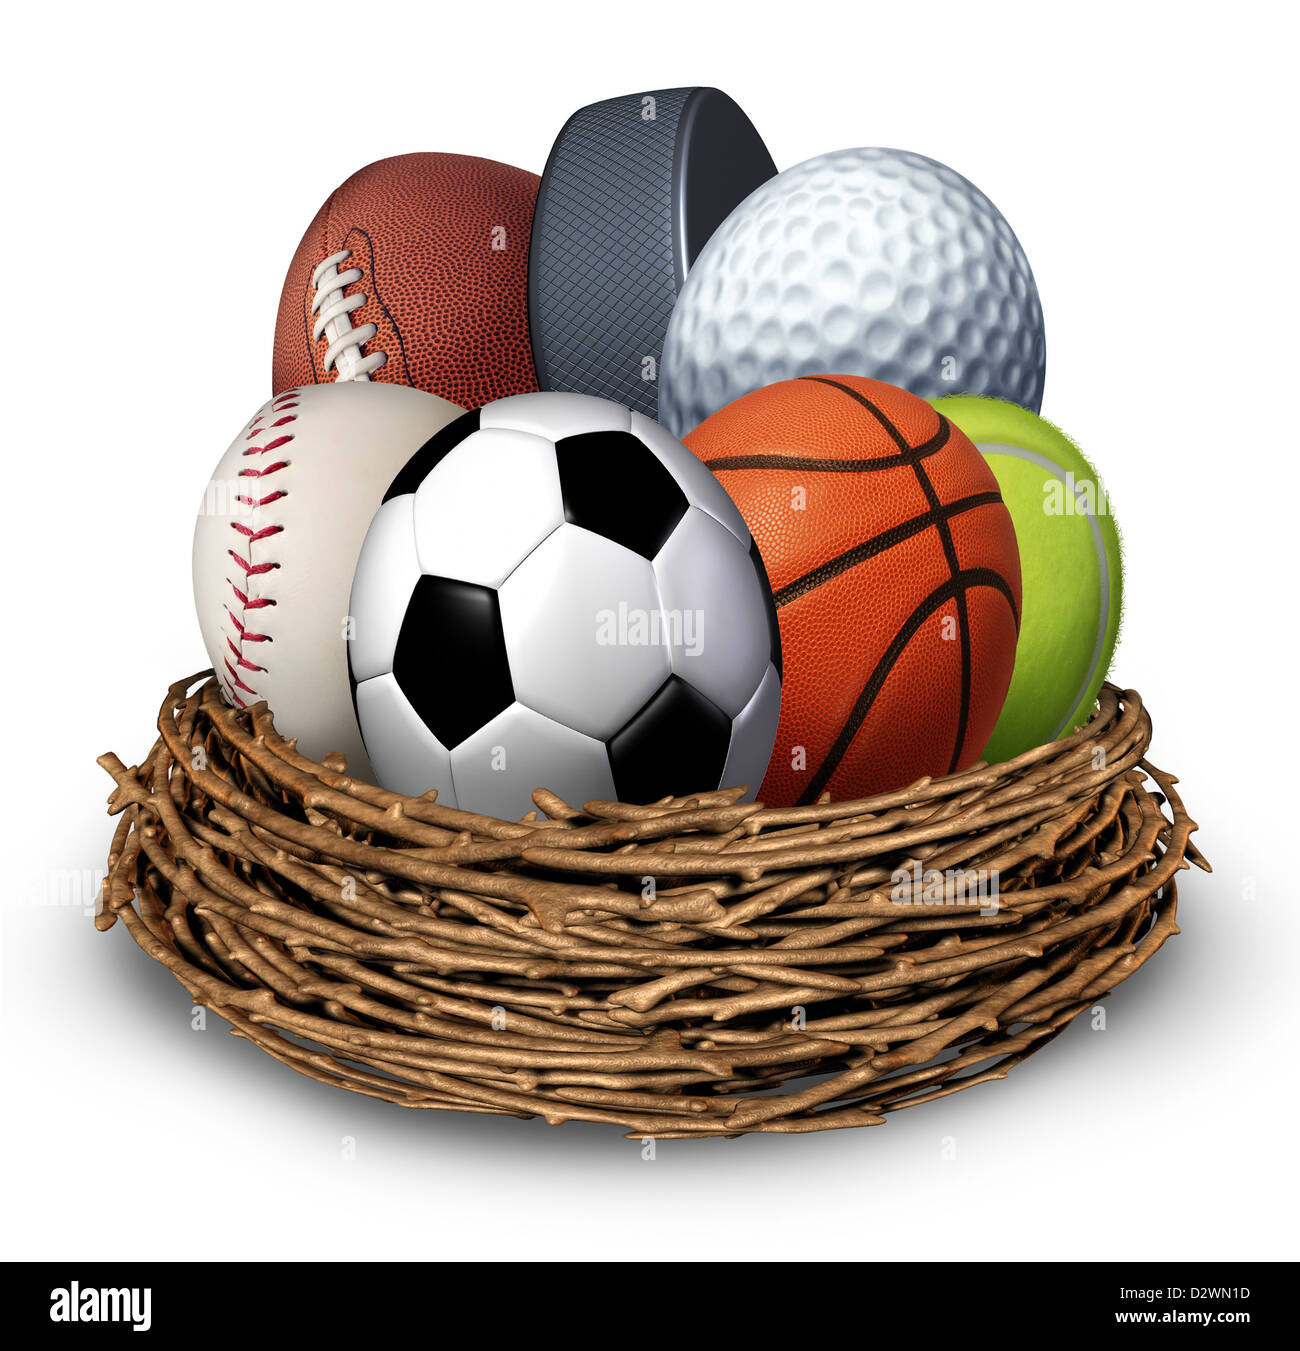 Nid de sport concept avec une rondelle de hockey baseball football basketball soccer tennis balle de golf en forme d'œuf comme un symbole de la santé et de remise en forme par l'activité physique de la famille et de la jeunesse. Banque D'Images